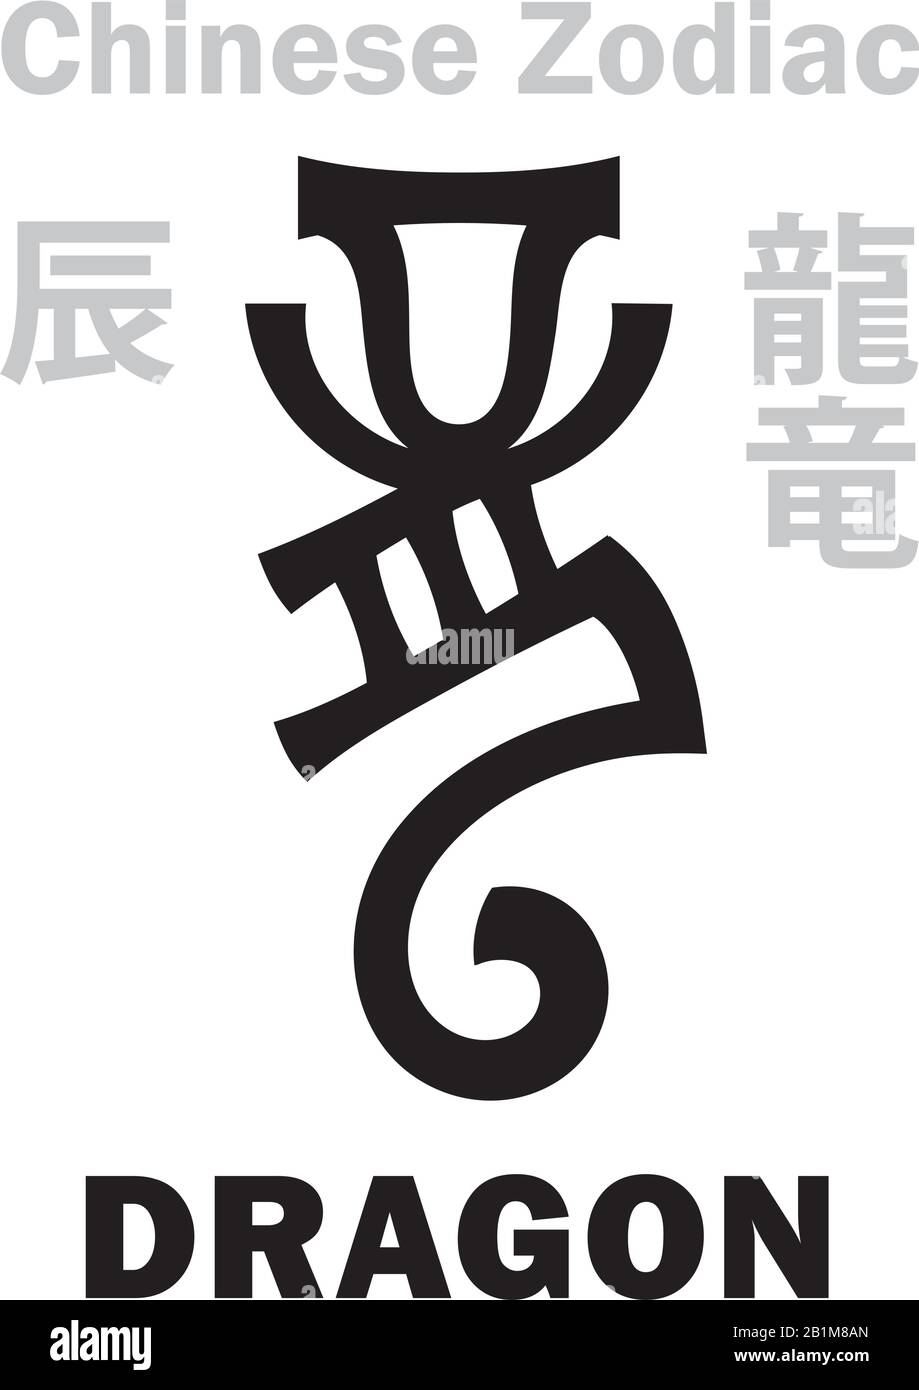 Astrología Alfabeto: Dragón [竜] signo del Zodiaco chino. También: Azure Green Dragon (Qing Long), Guardián Del Este, Rey De Todas Las Bestias. Jeroglíficos. Ilustración del Vector